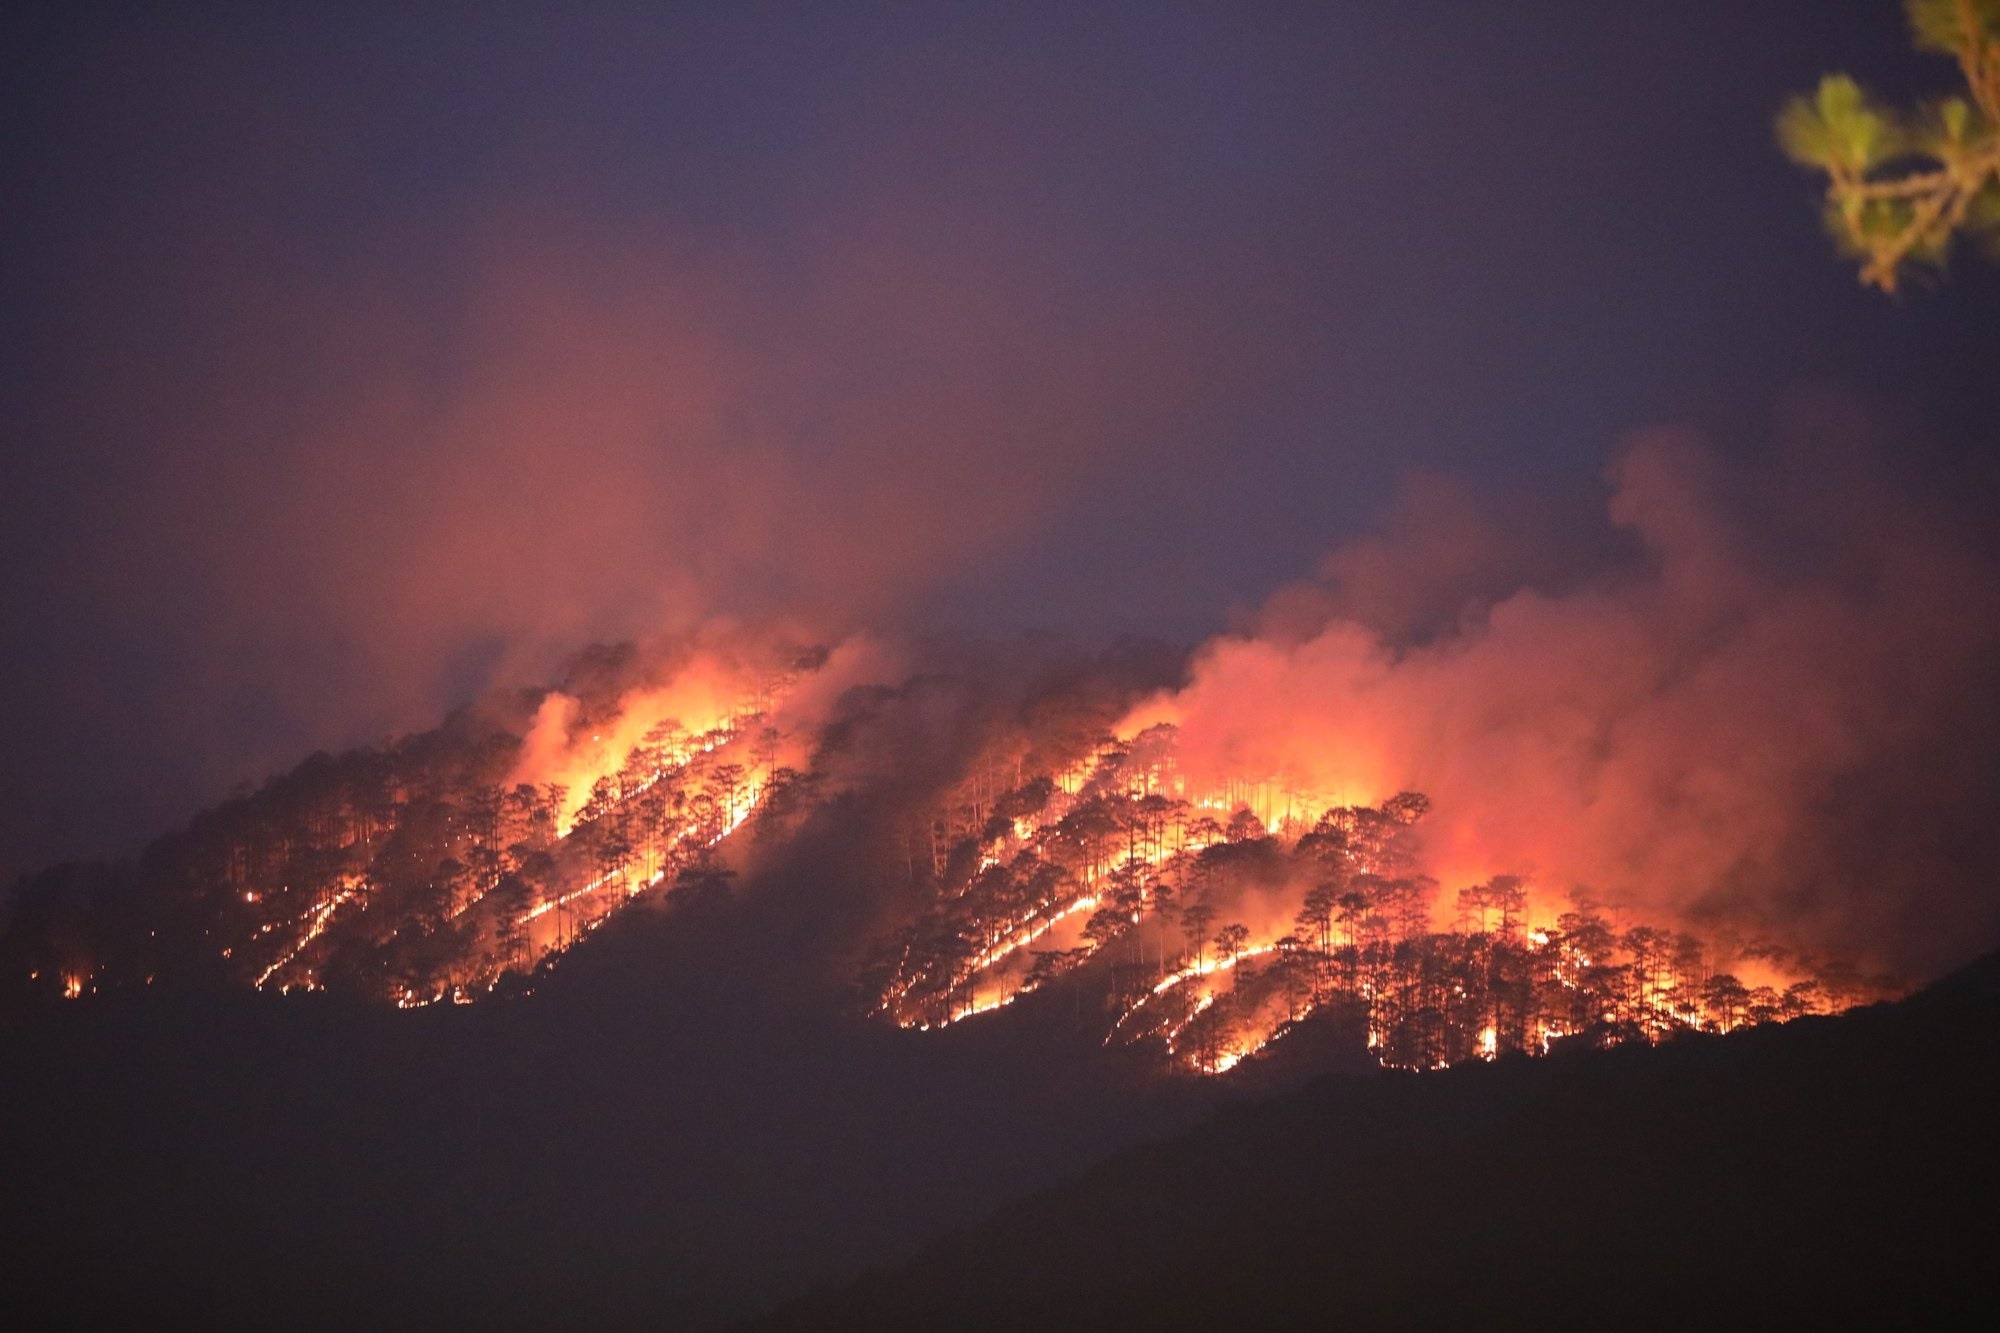 Lâm Đồng: Cháy rừng lớn ở núi Voi, lửa bốc cao, các cột khói bao trùm - Ảnh 2